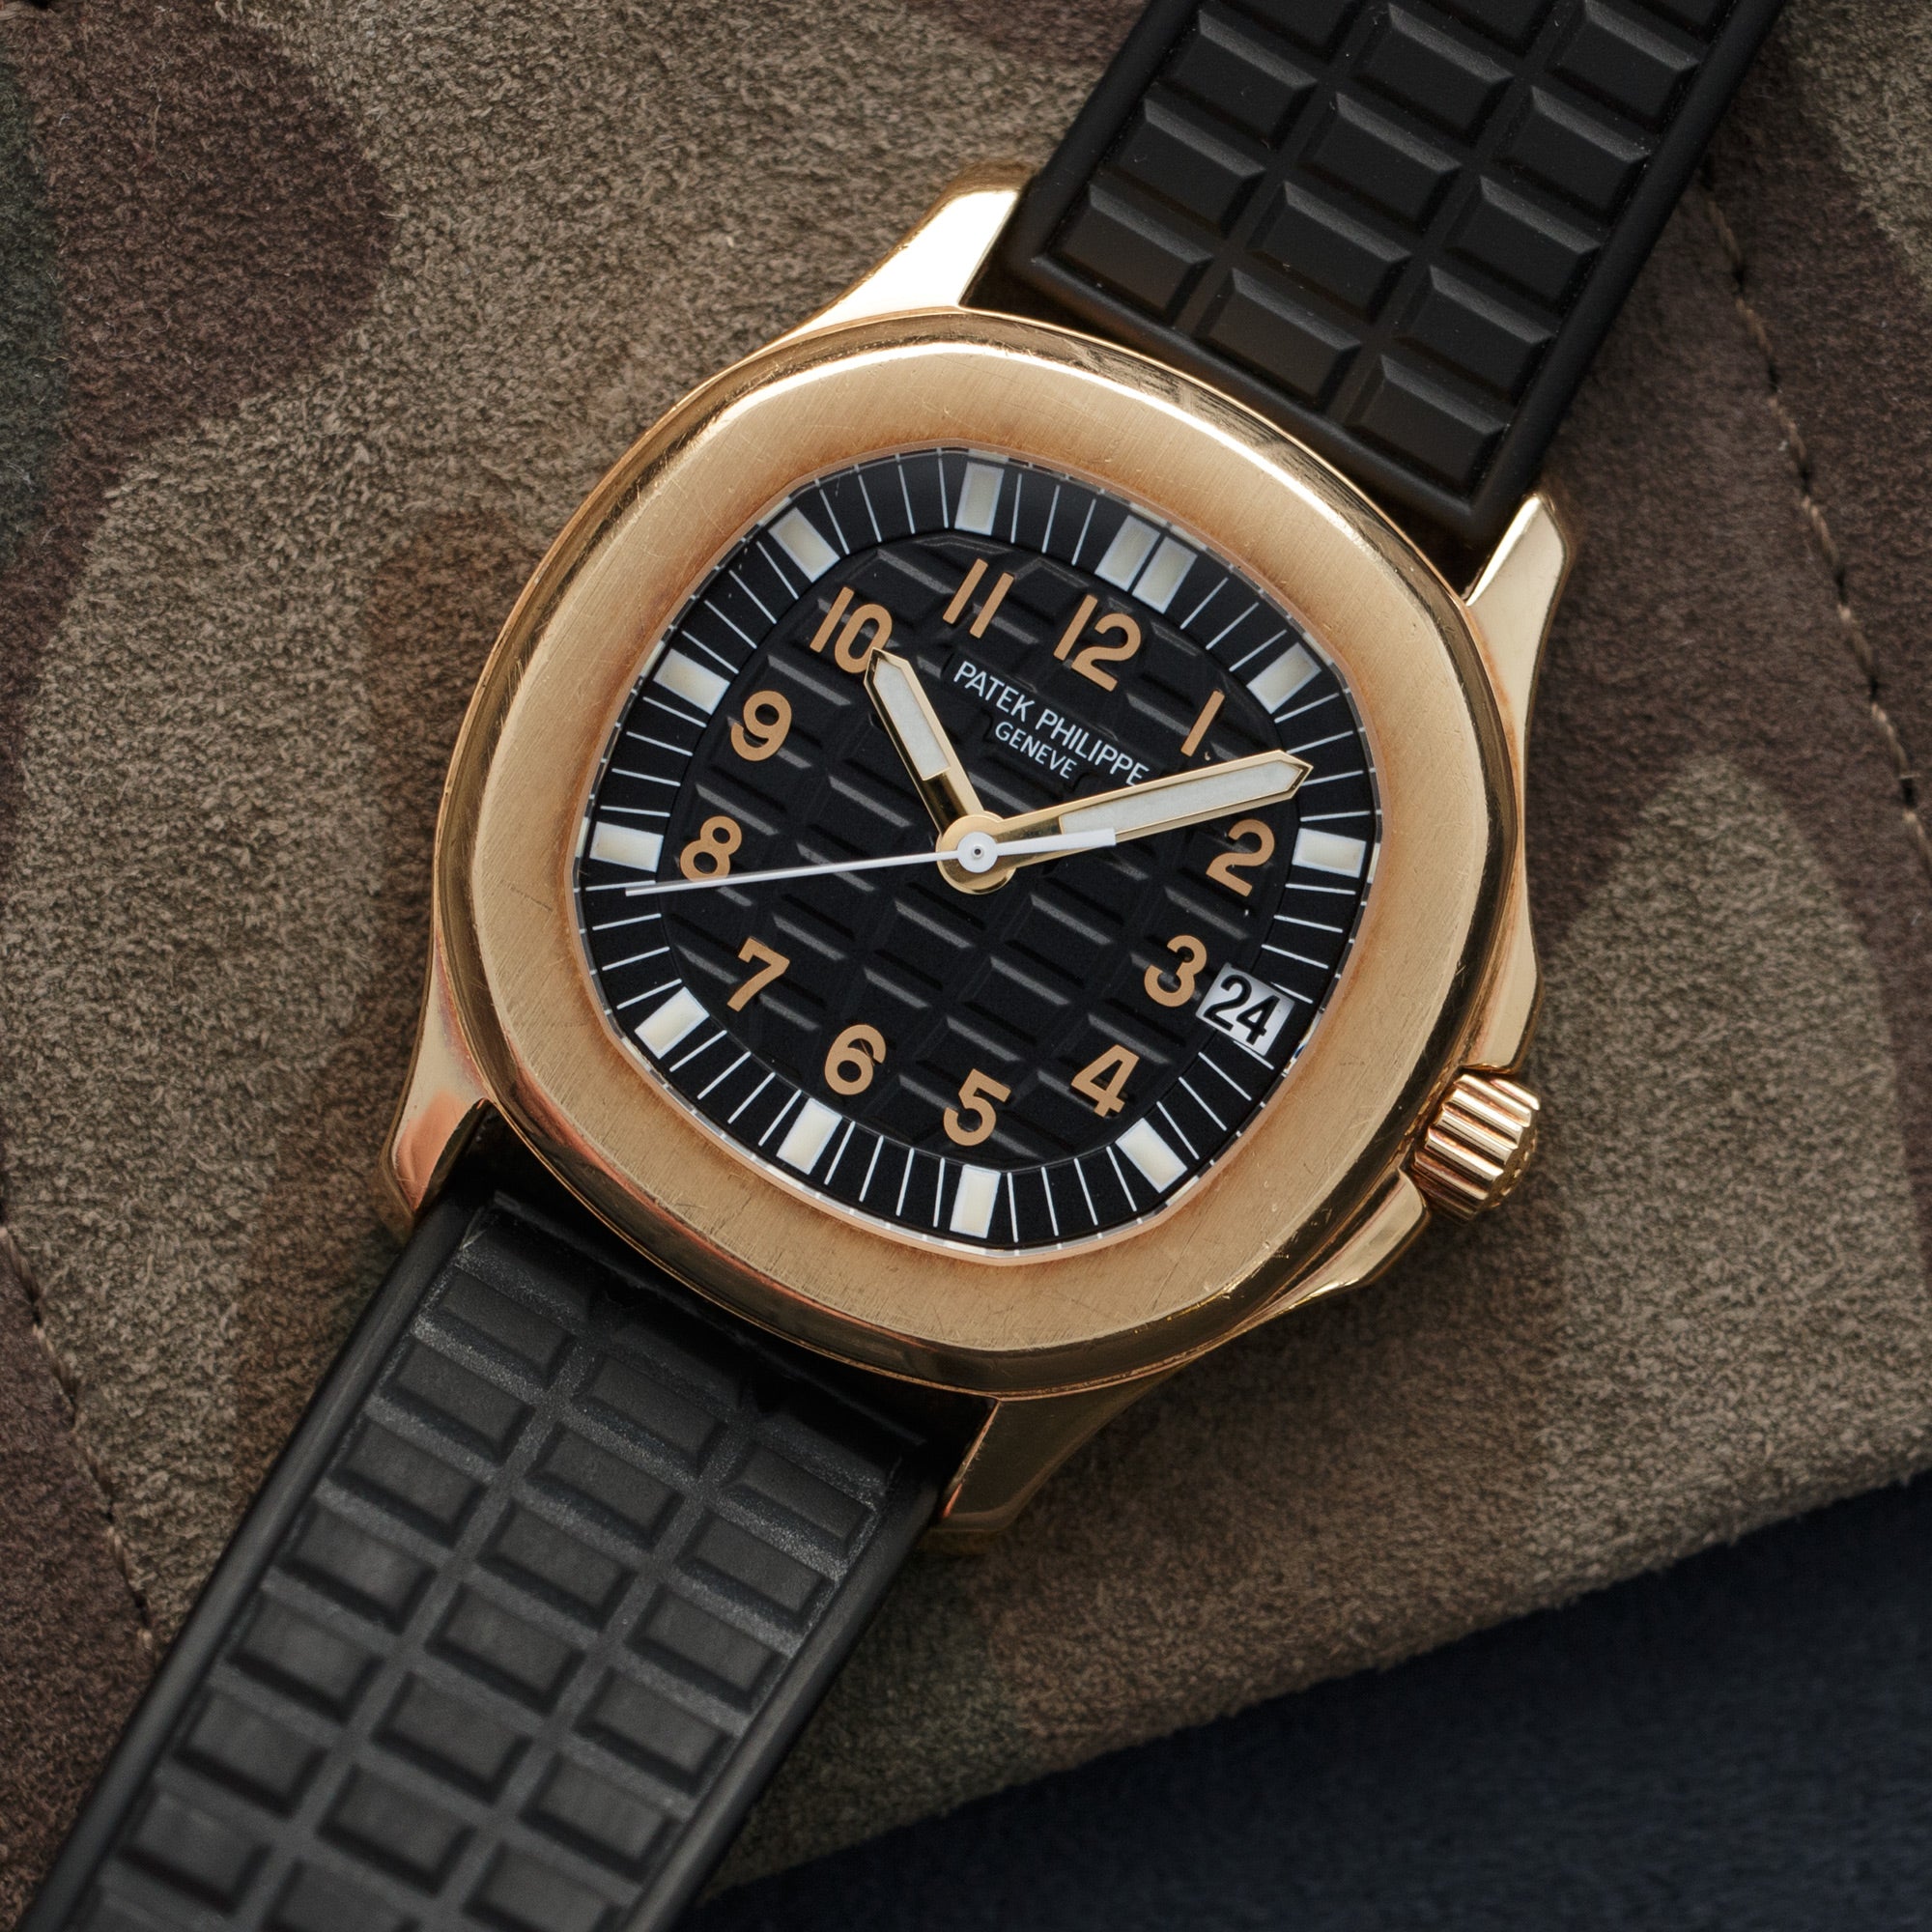 Patek Philippe - Patek Philippe Yellow Gold Aquanaut Watch Ref. 5066 - The Keystone Watches